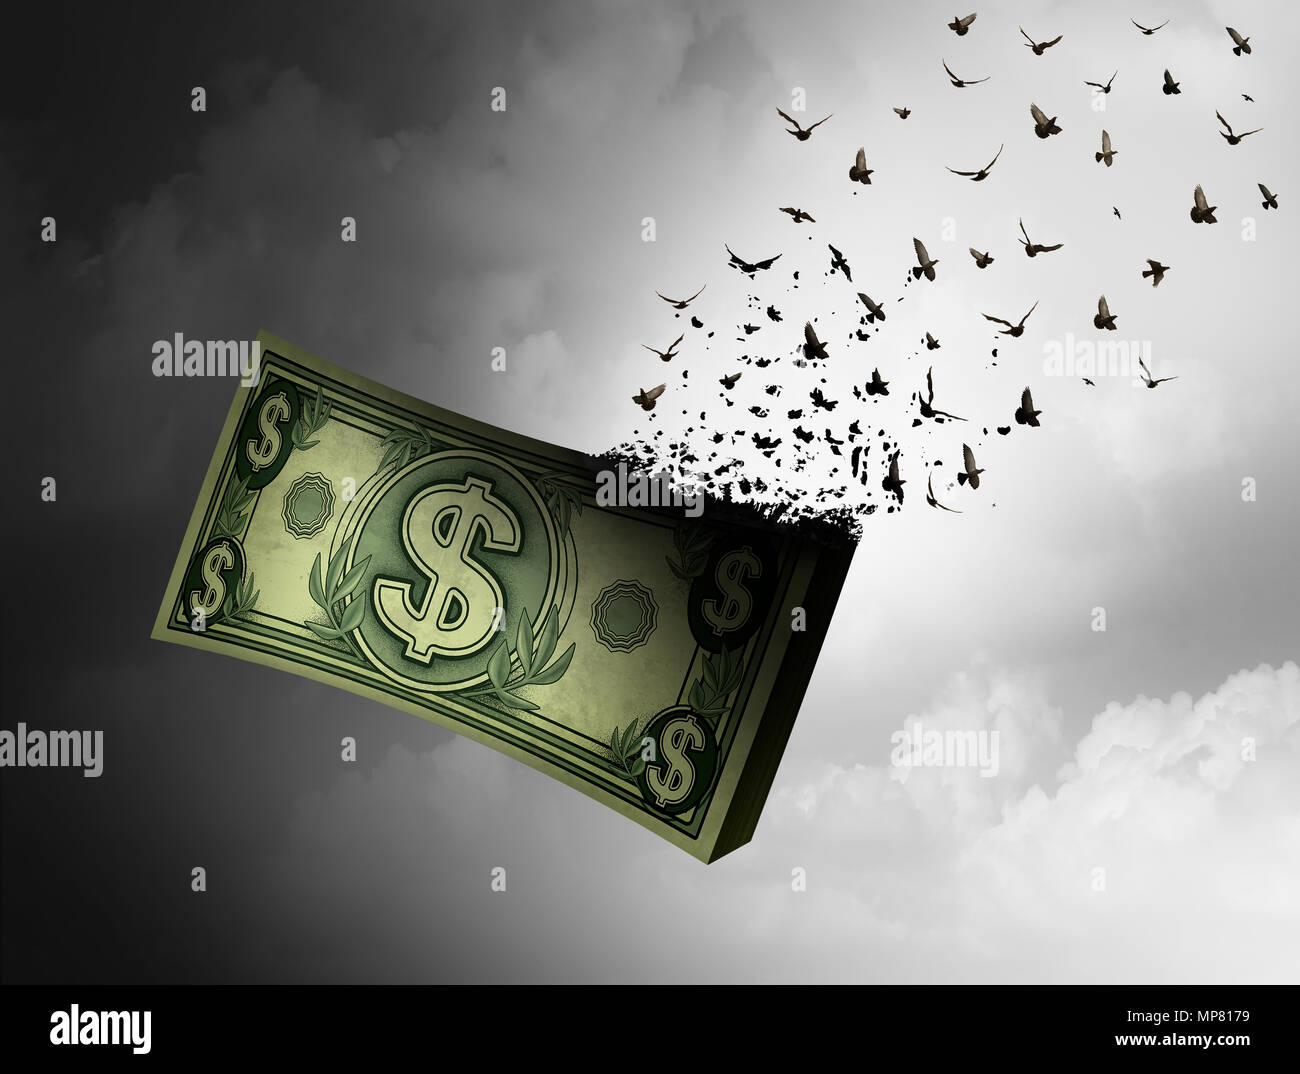 Geld weg Fliegen und Verlust von Reichtum oder budgetüberschreitungen Finanzkonzept mit 3D-Illustration Elemente. Stockfoto